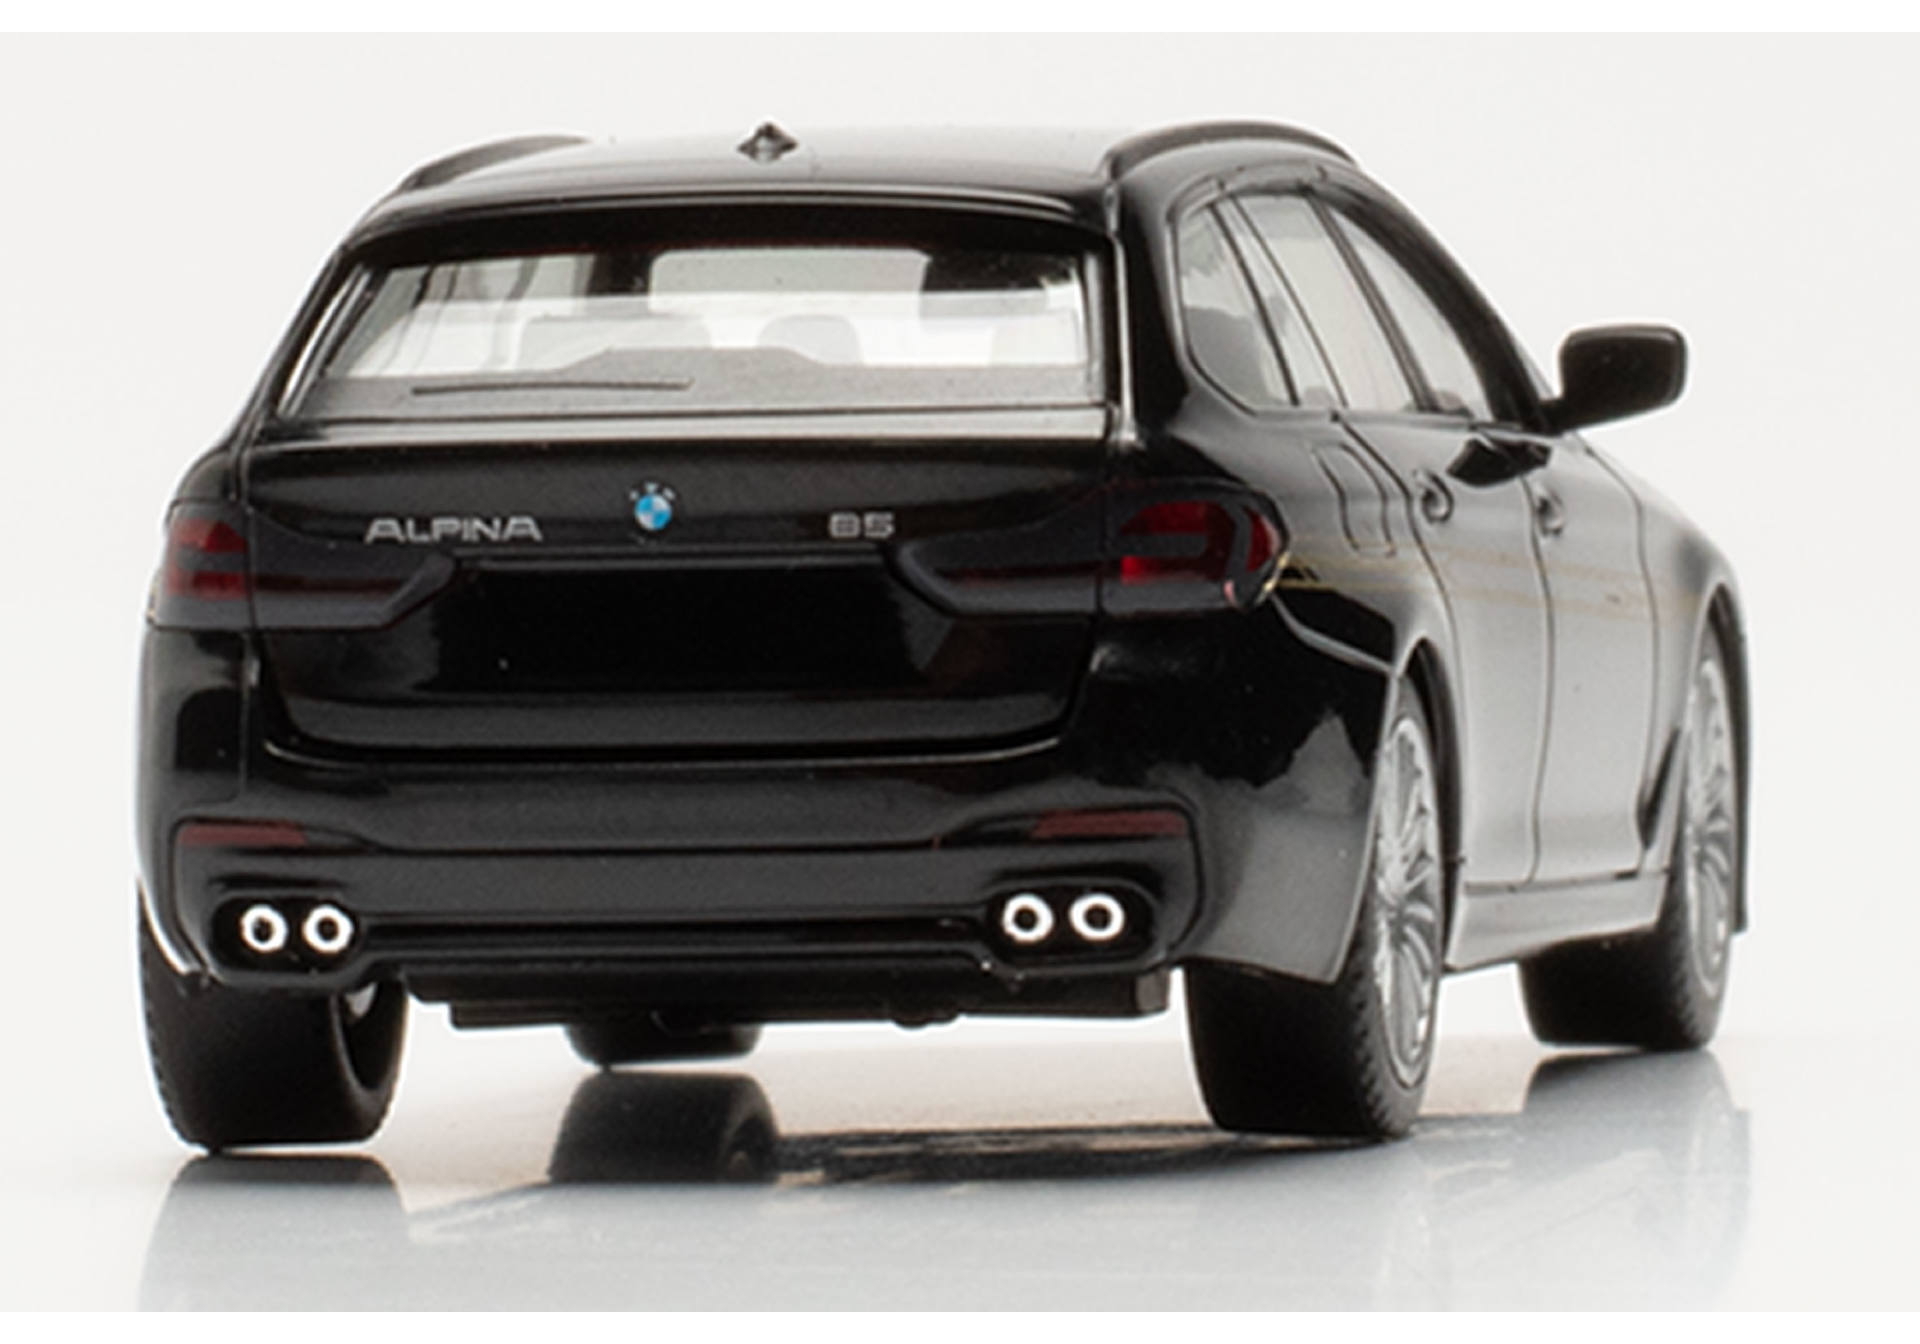 BMW Alpina B5 Touring, schwarz